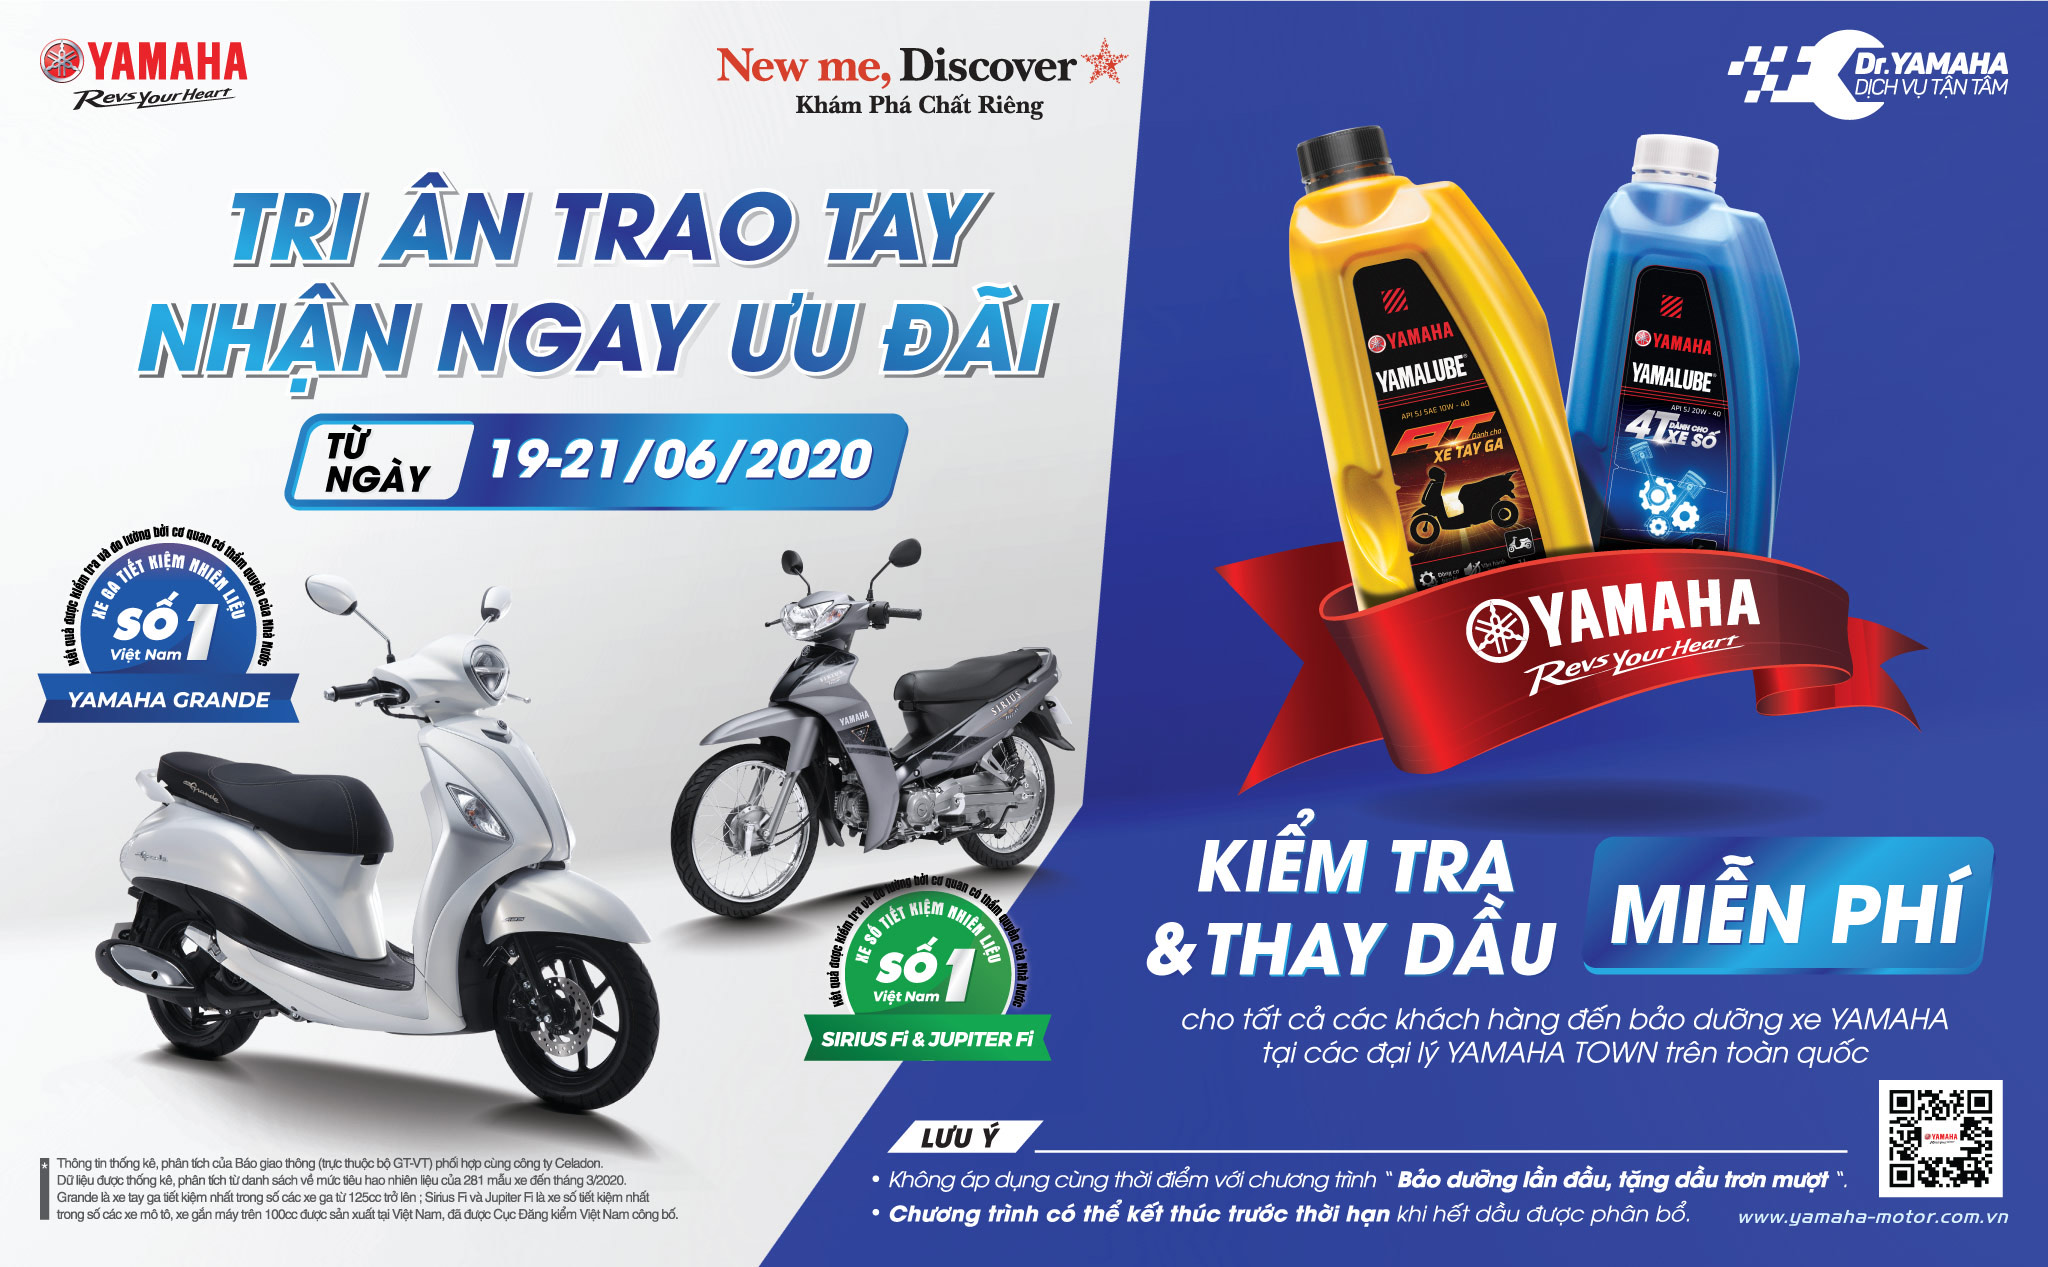 [QC] Yamaha triển khai chương trình thay dầu miễn phí cho khách hàng trên toàn quốc